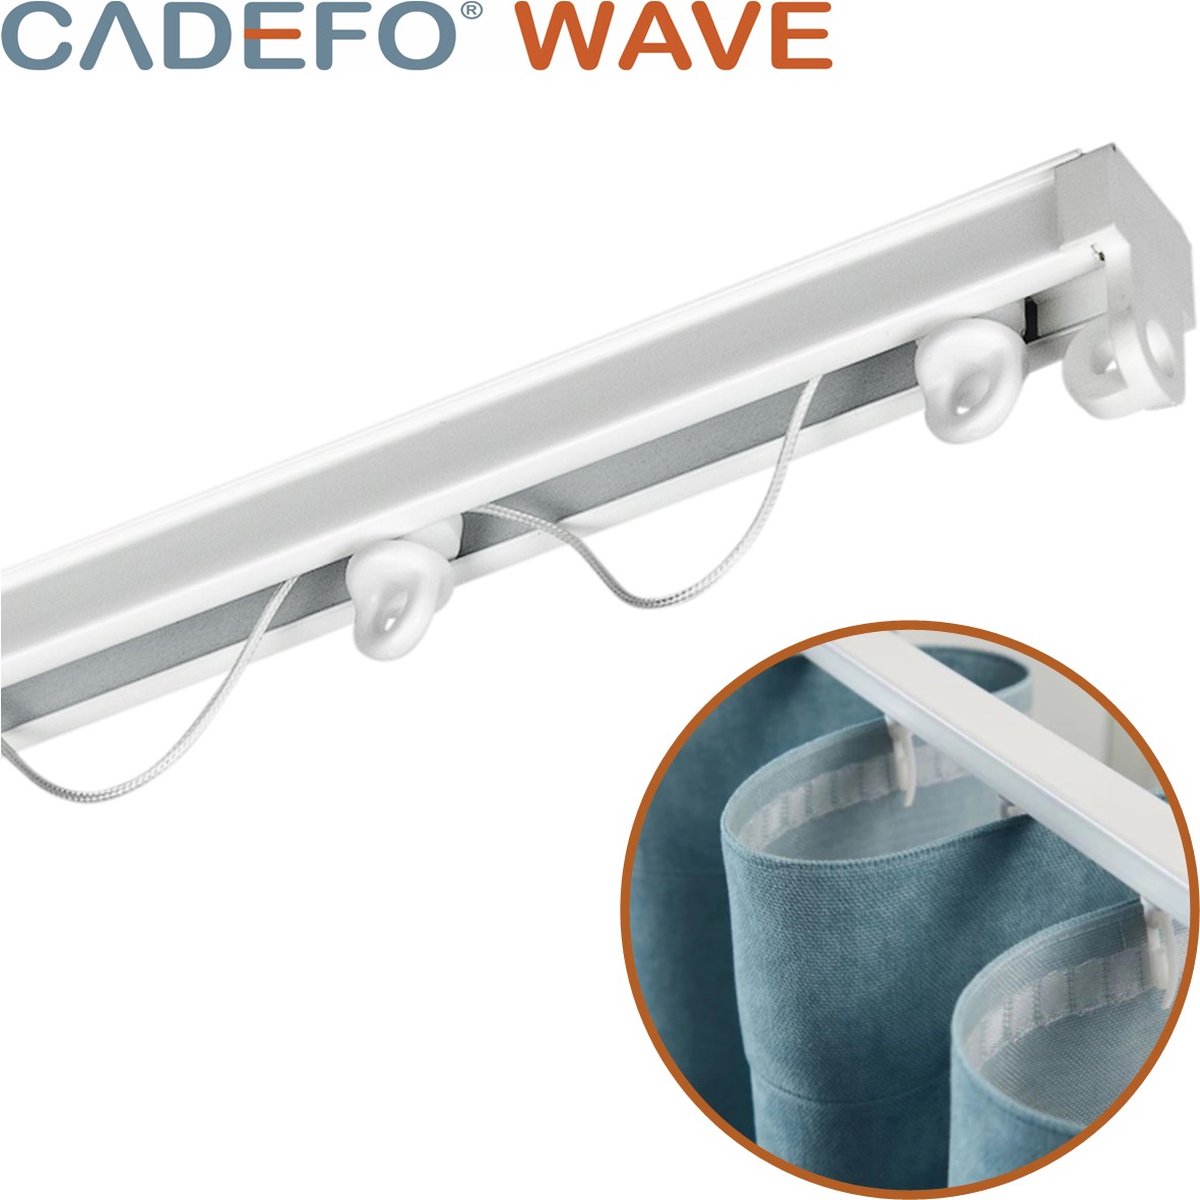 CADEFO WAVE (351 - 400 cm) Gordijnrails - Compleet op maat! - UIT 1 STUK - Leverbaar tot 6 meter - Plafondbevestiging - Lengte 386 cm